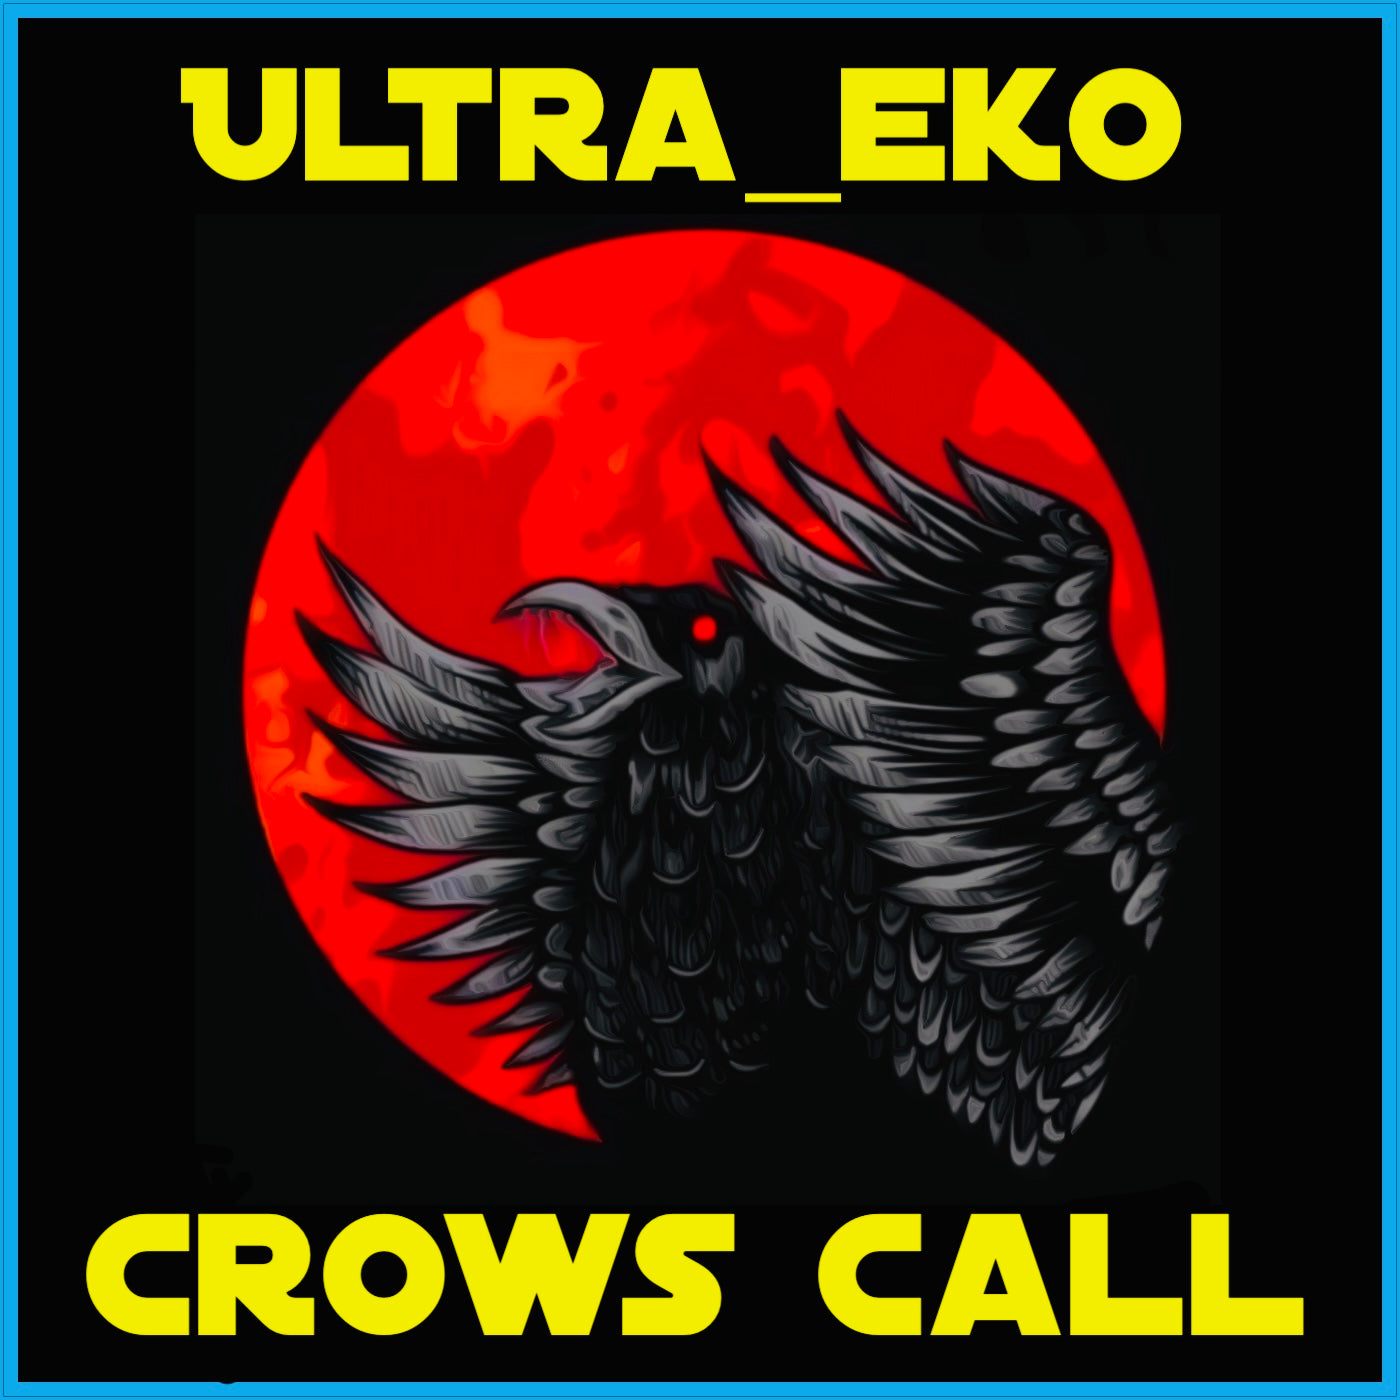 Ultra_eko – ‘Crows Call’